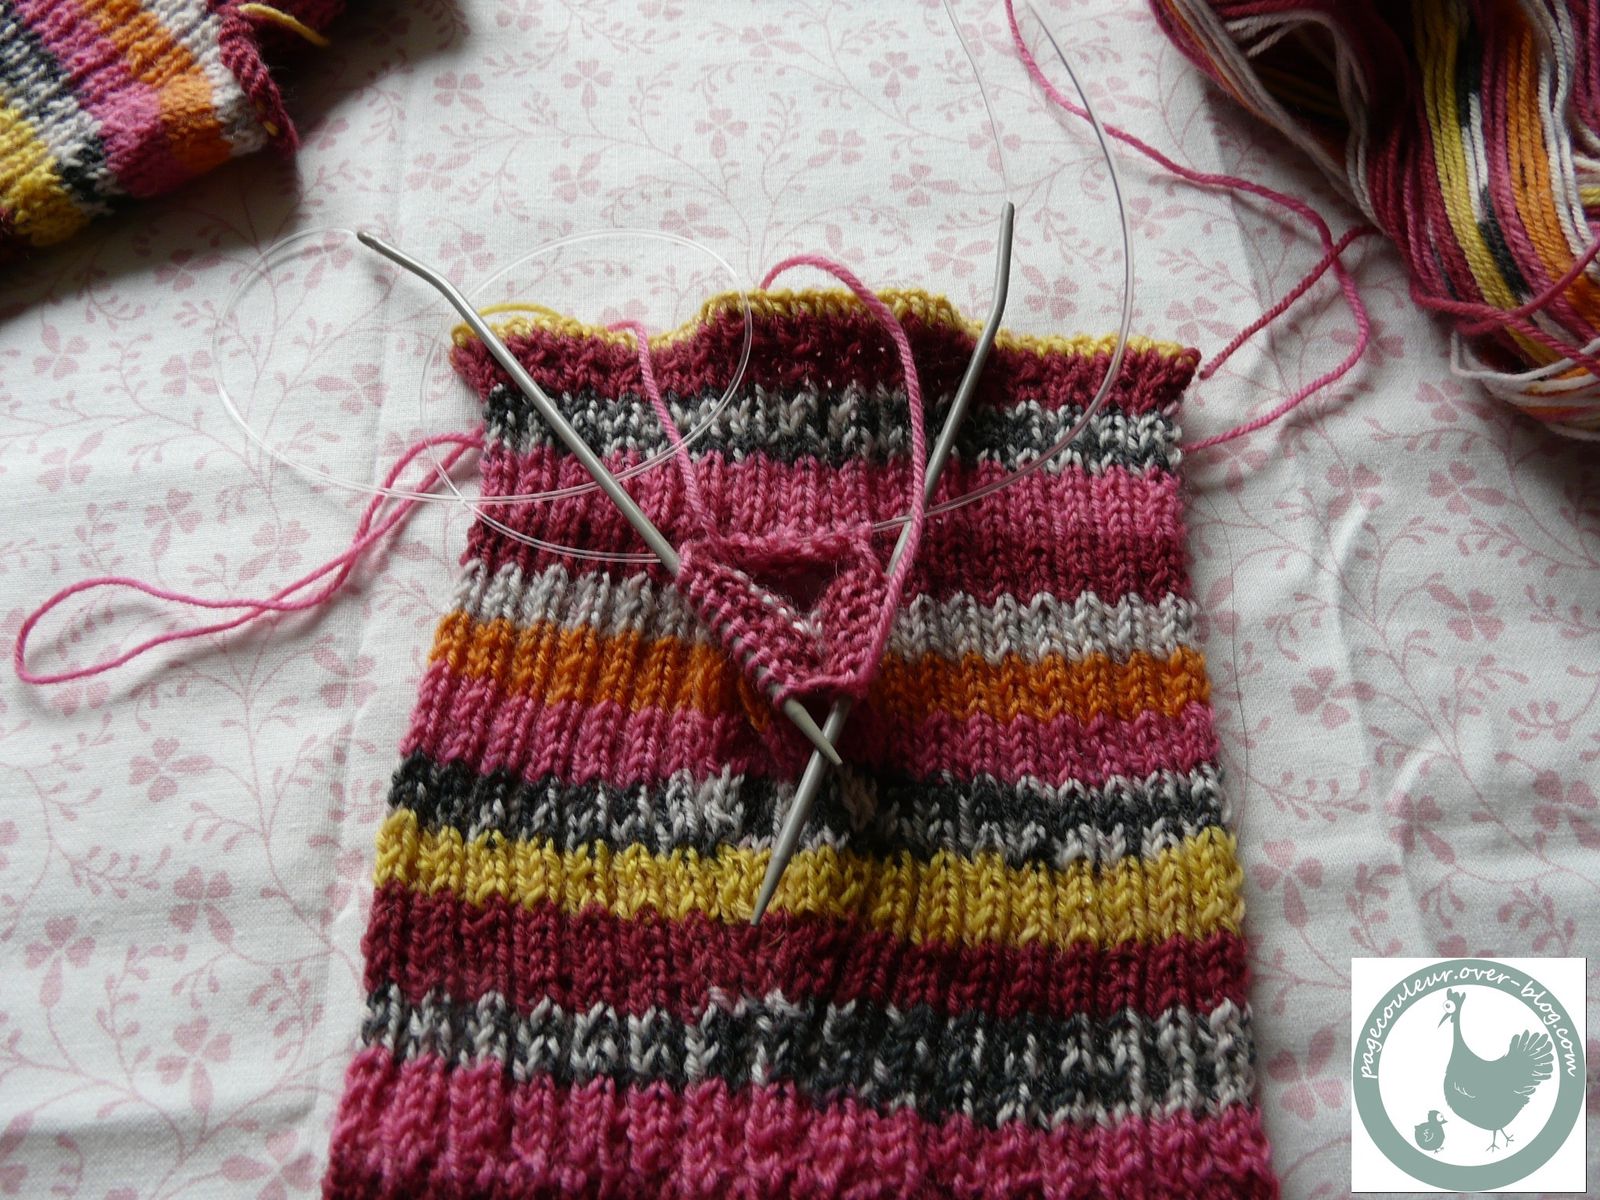 tricoter a plat avec des aiguilles circulaires